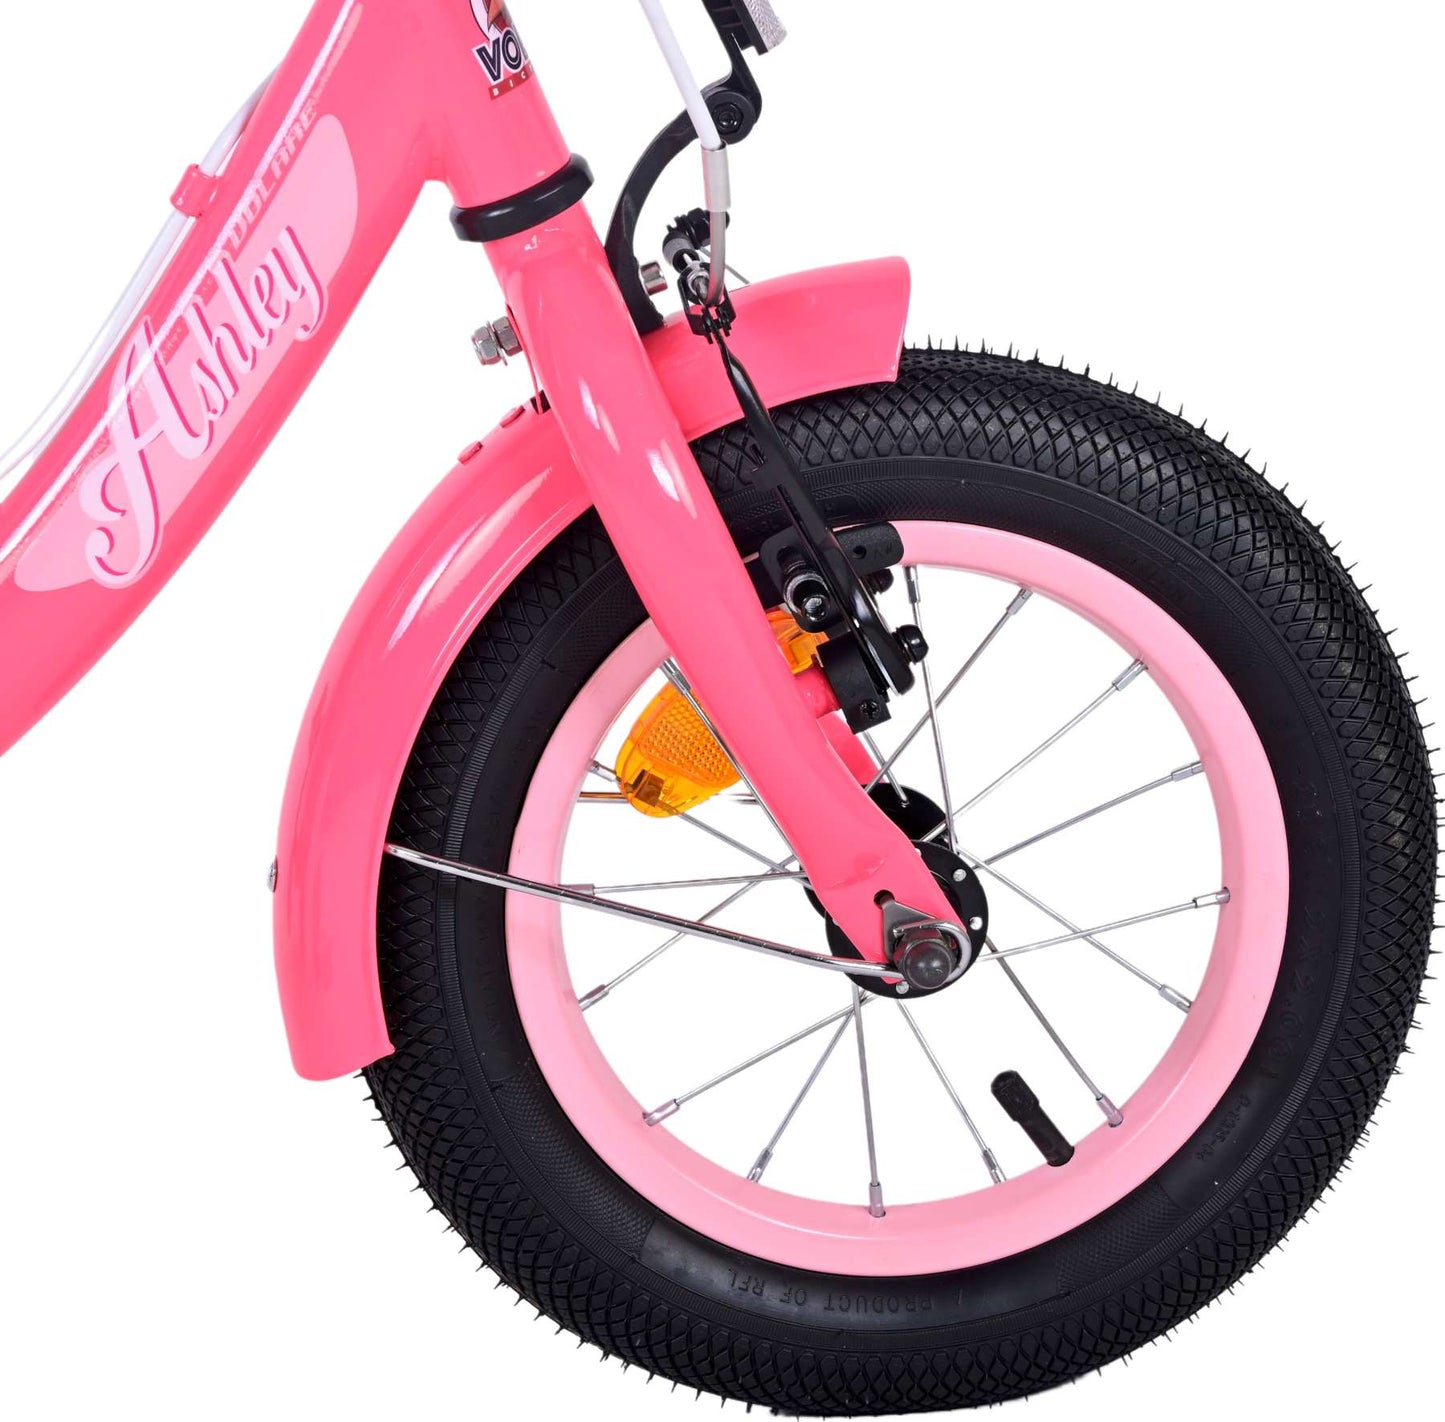 Bicycle per bambini di Vlatare Ashley - Girls - 12 pollici - Rosso rosa - Freni a due mani